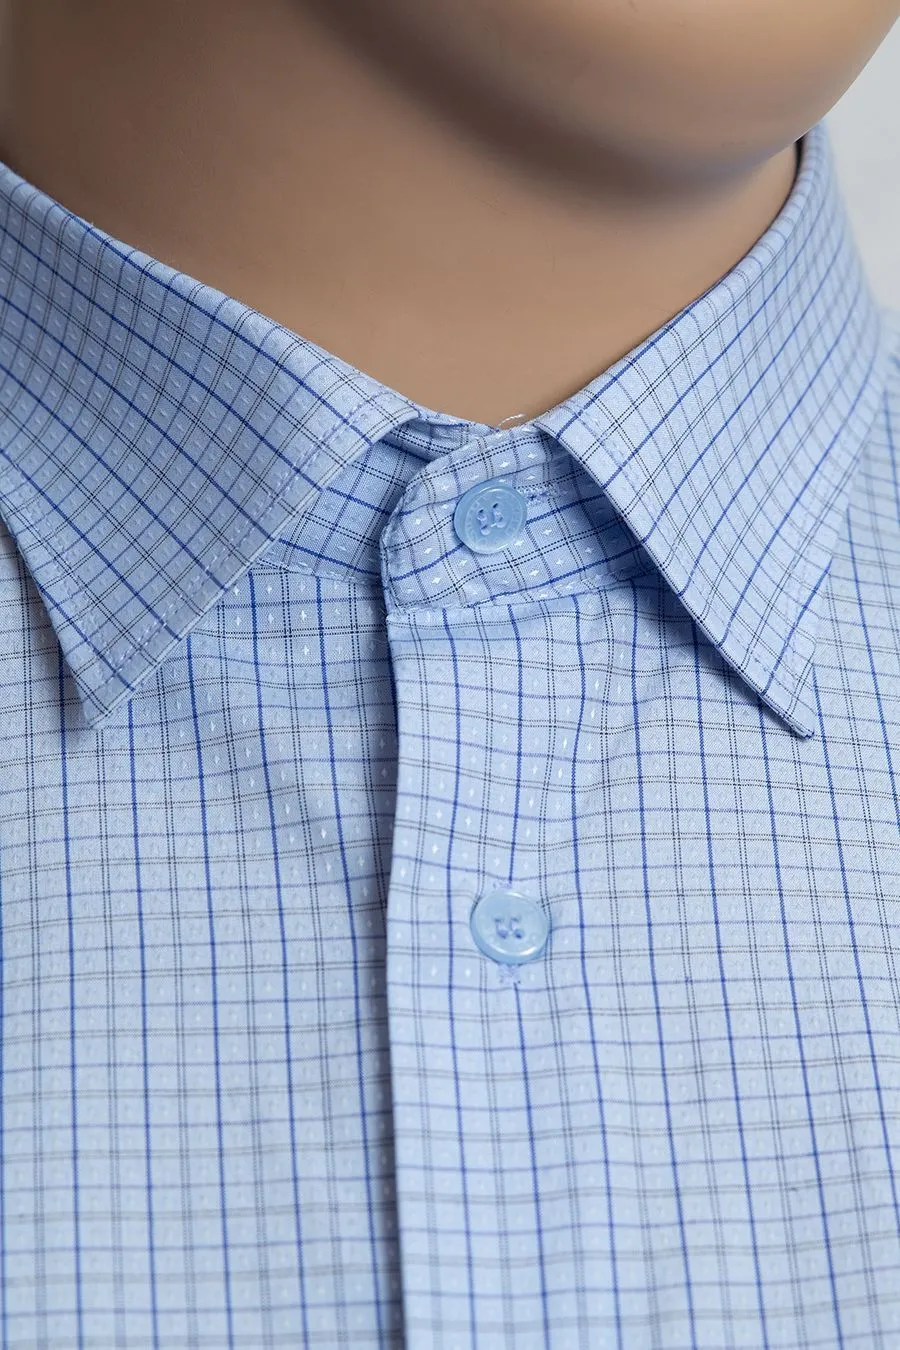 Рубашка голубая в мелкий ромбик большого размера